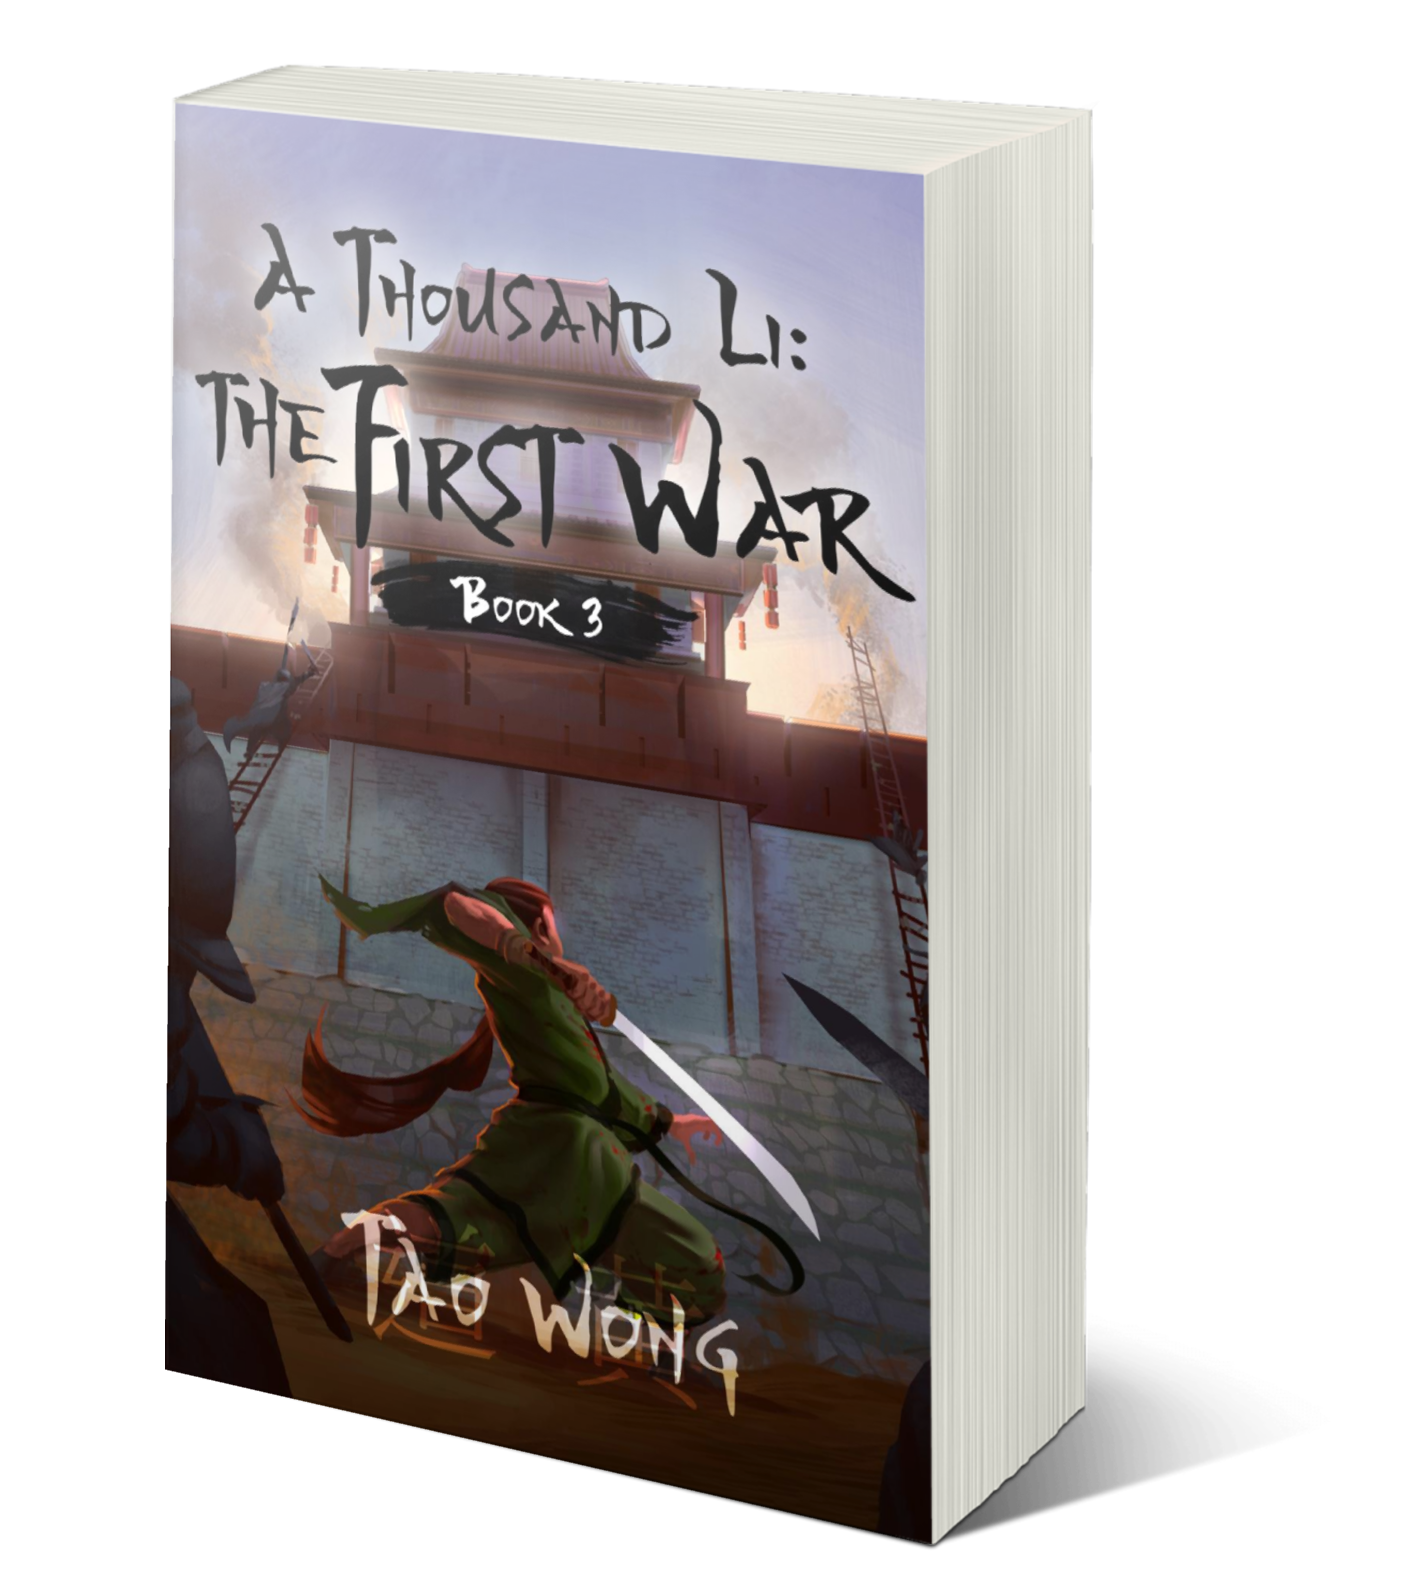 The First War (A Thousand Li #3)